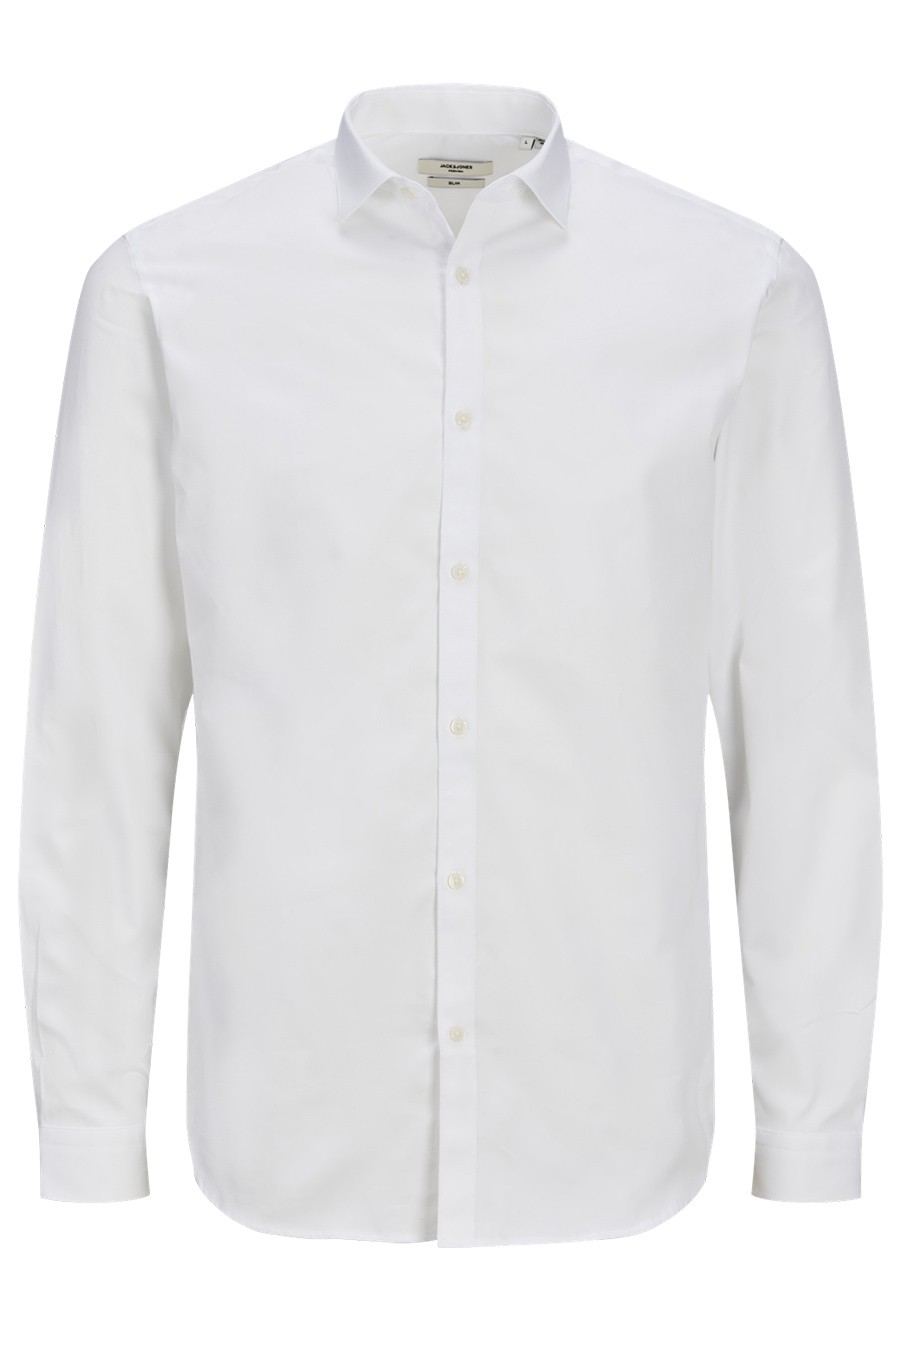 Marškiniai JACK & JONES 12201905-White